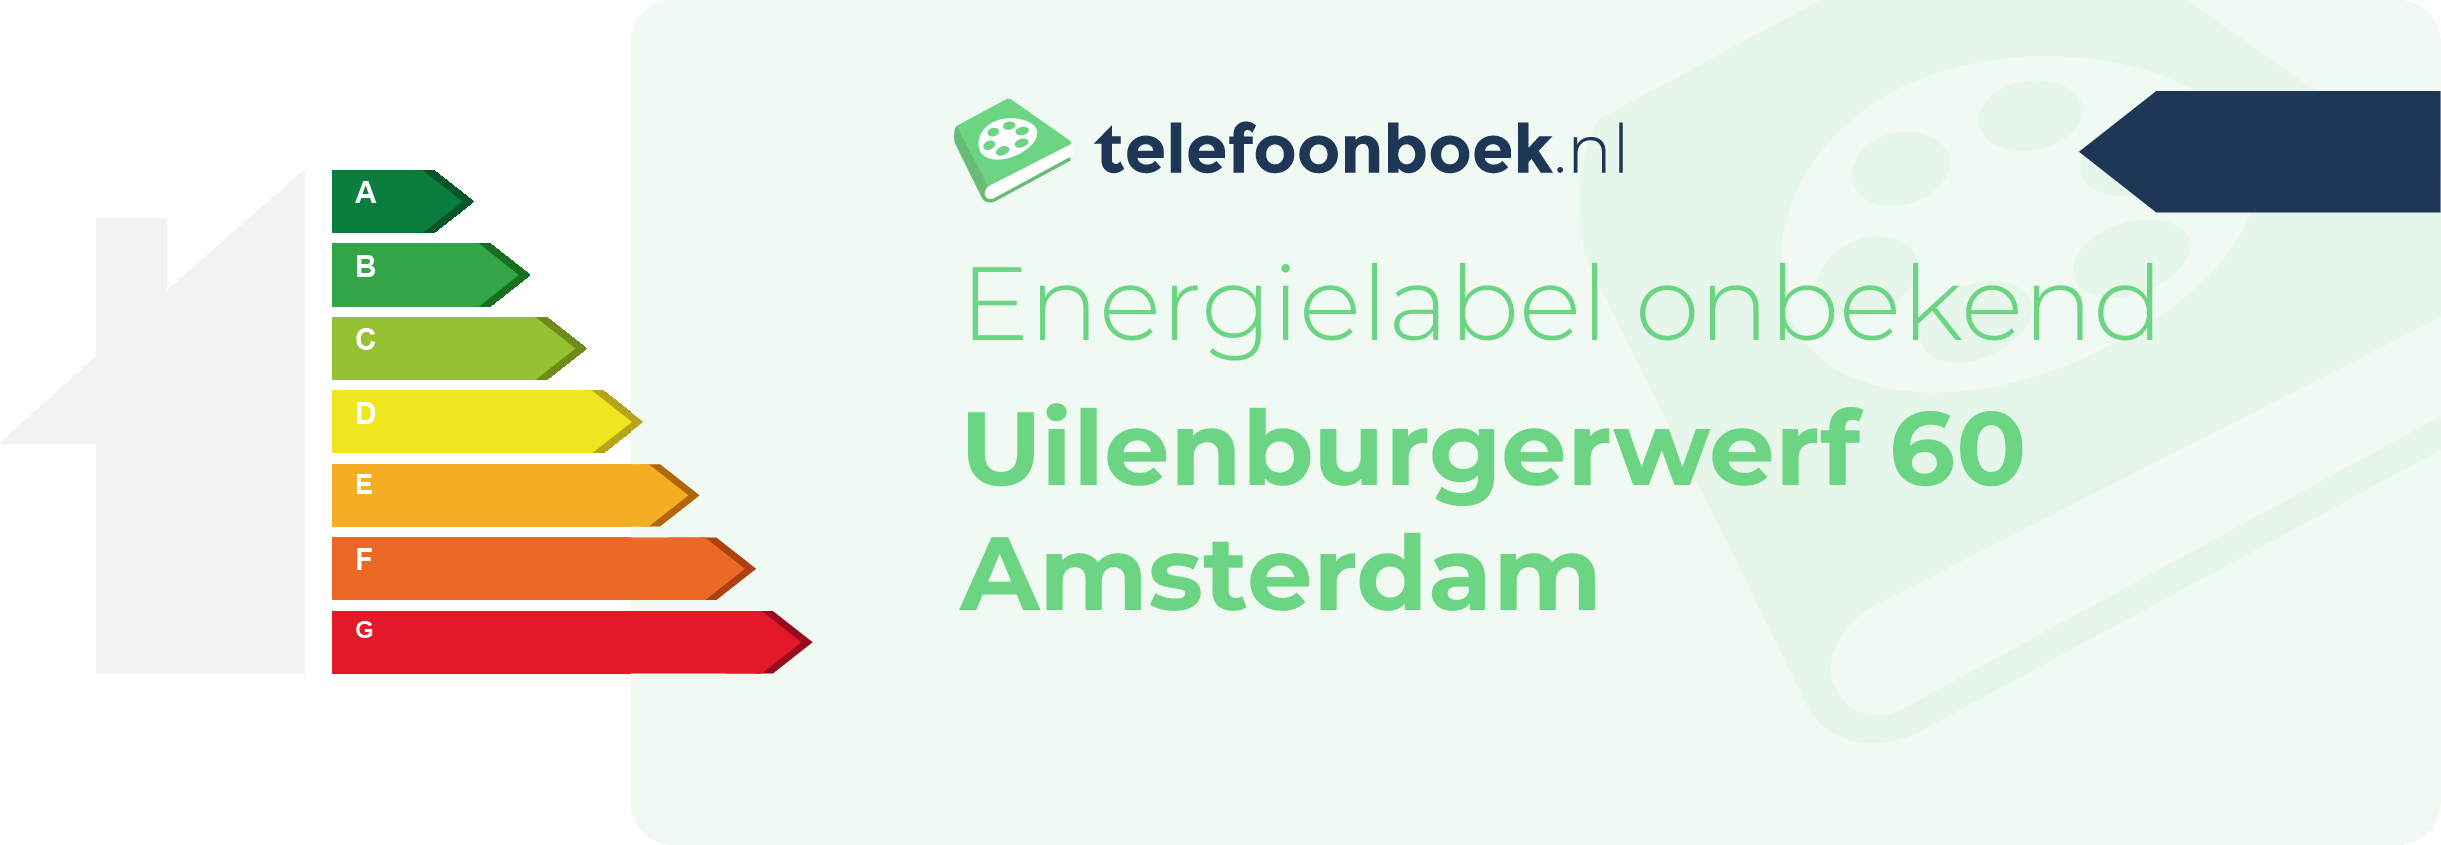 Energielabel Uilenburgerwerf 60 Amsterdam